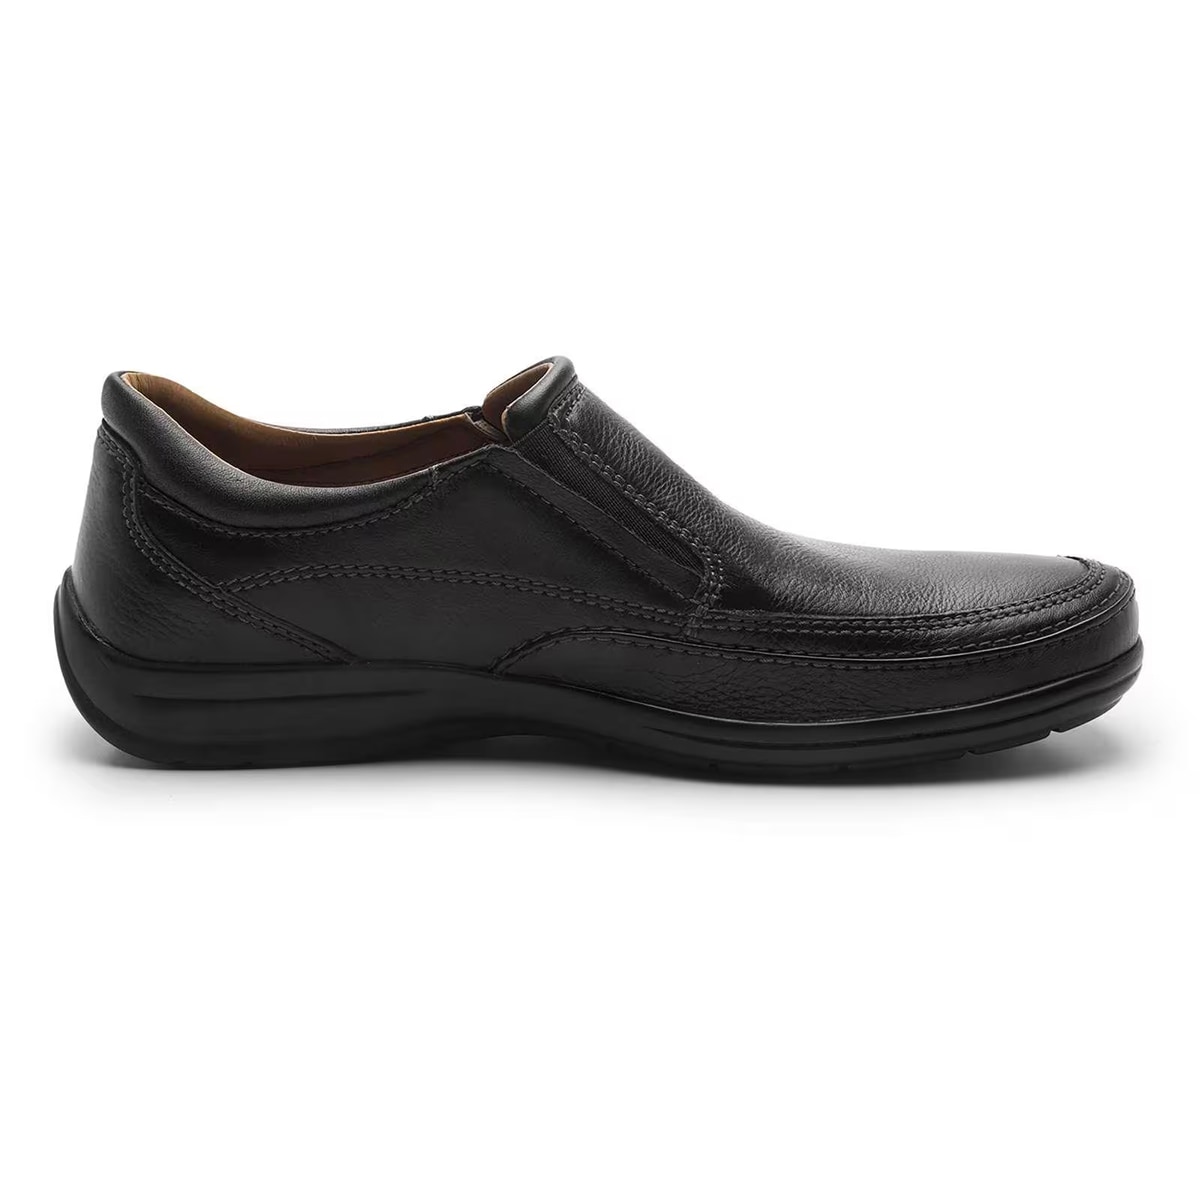 Zapatos Casual Para Hombre Calzado Caballero Oficina Cómodos